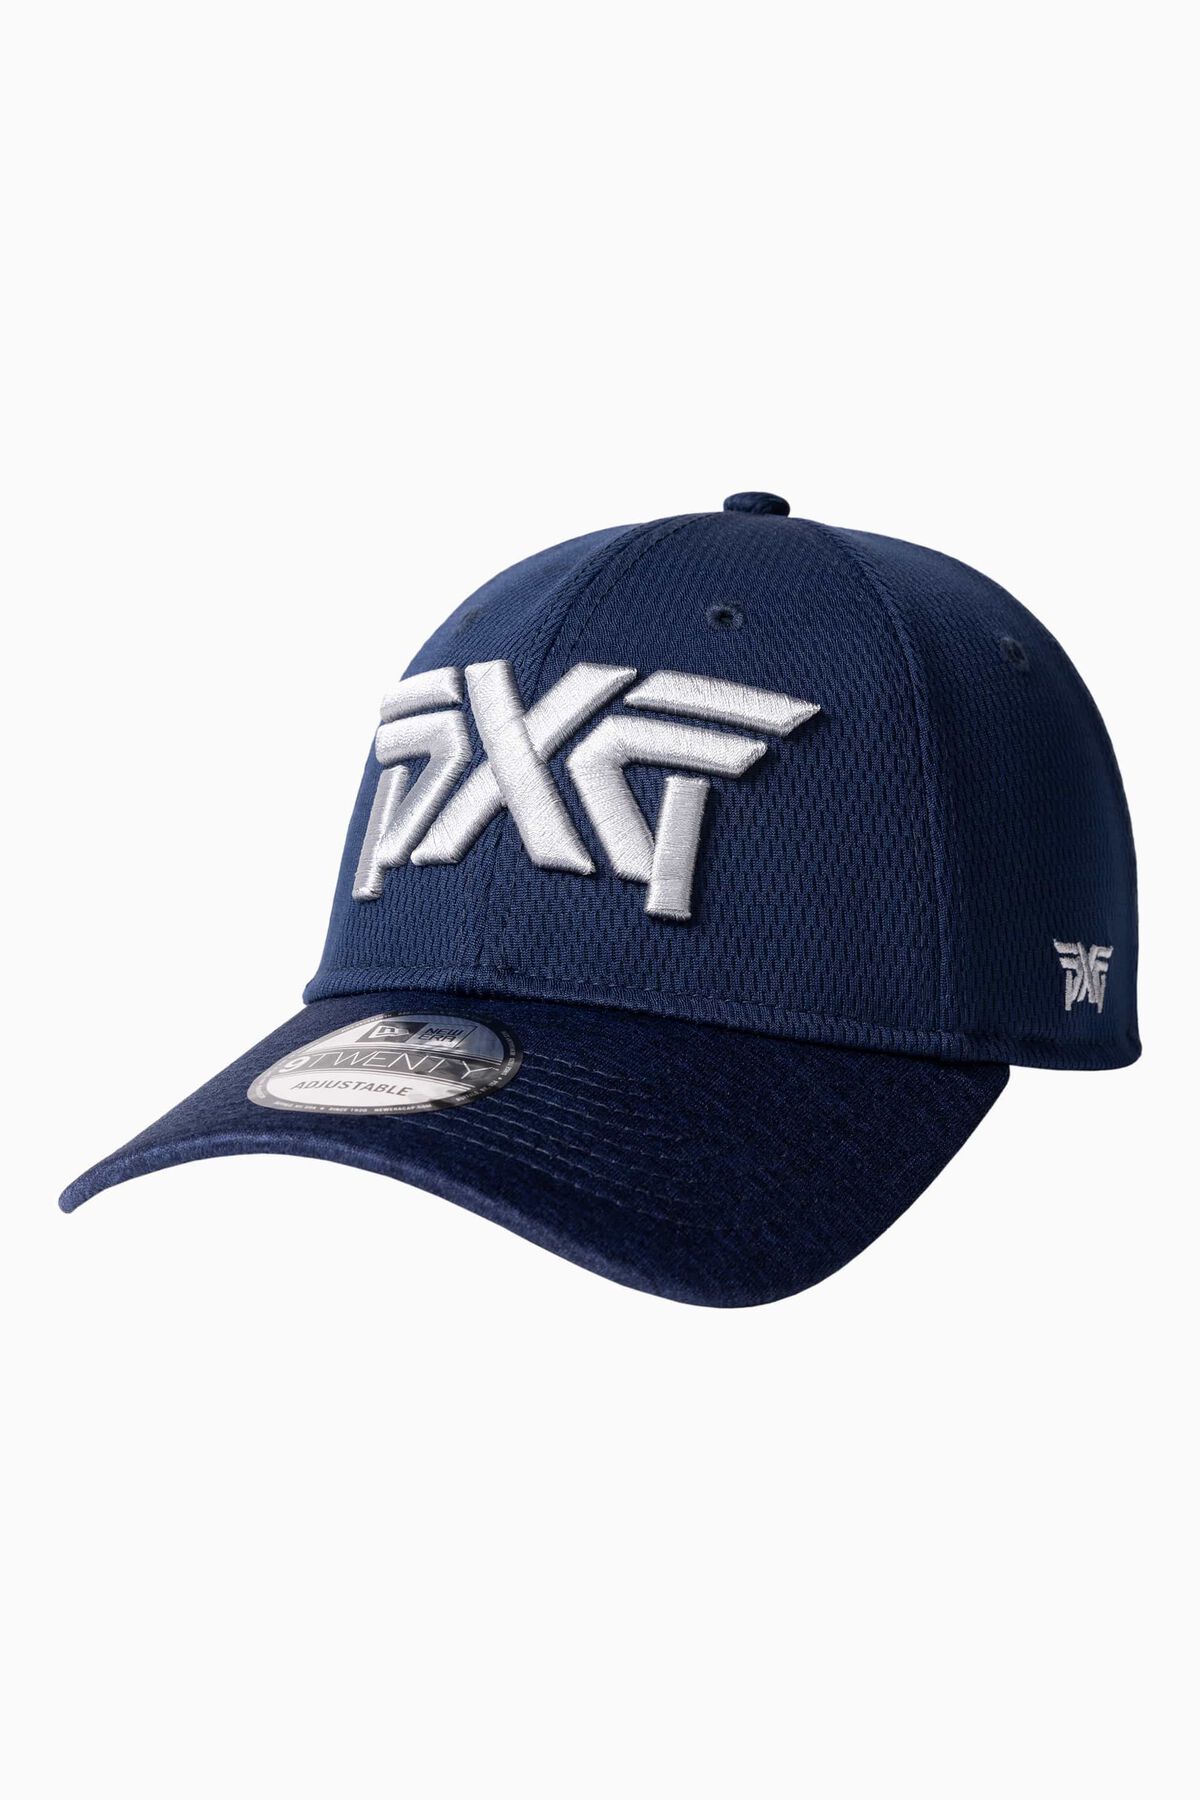 PXG Dallas Exclusive 9TWENTY Adjustable Cap 